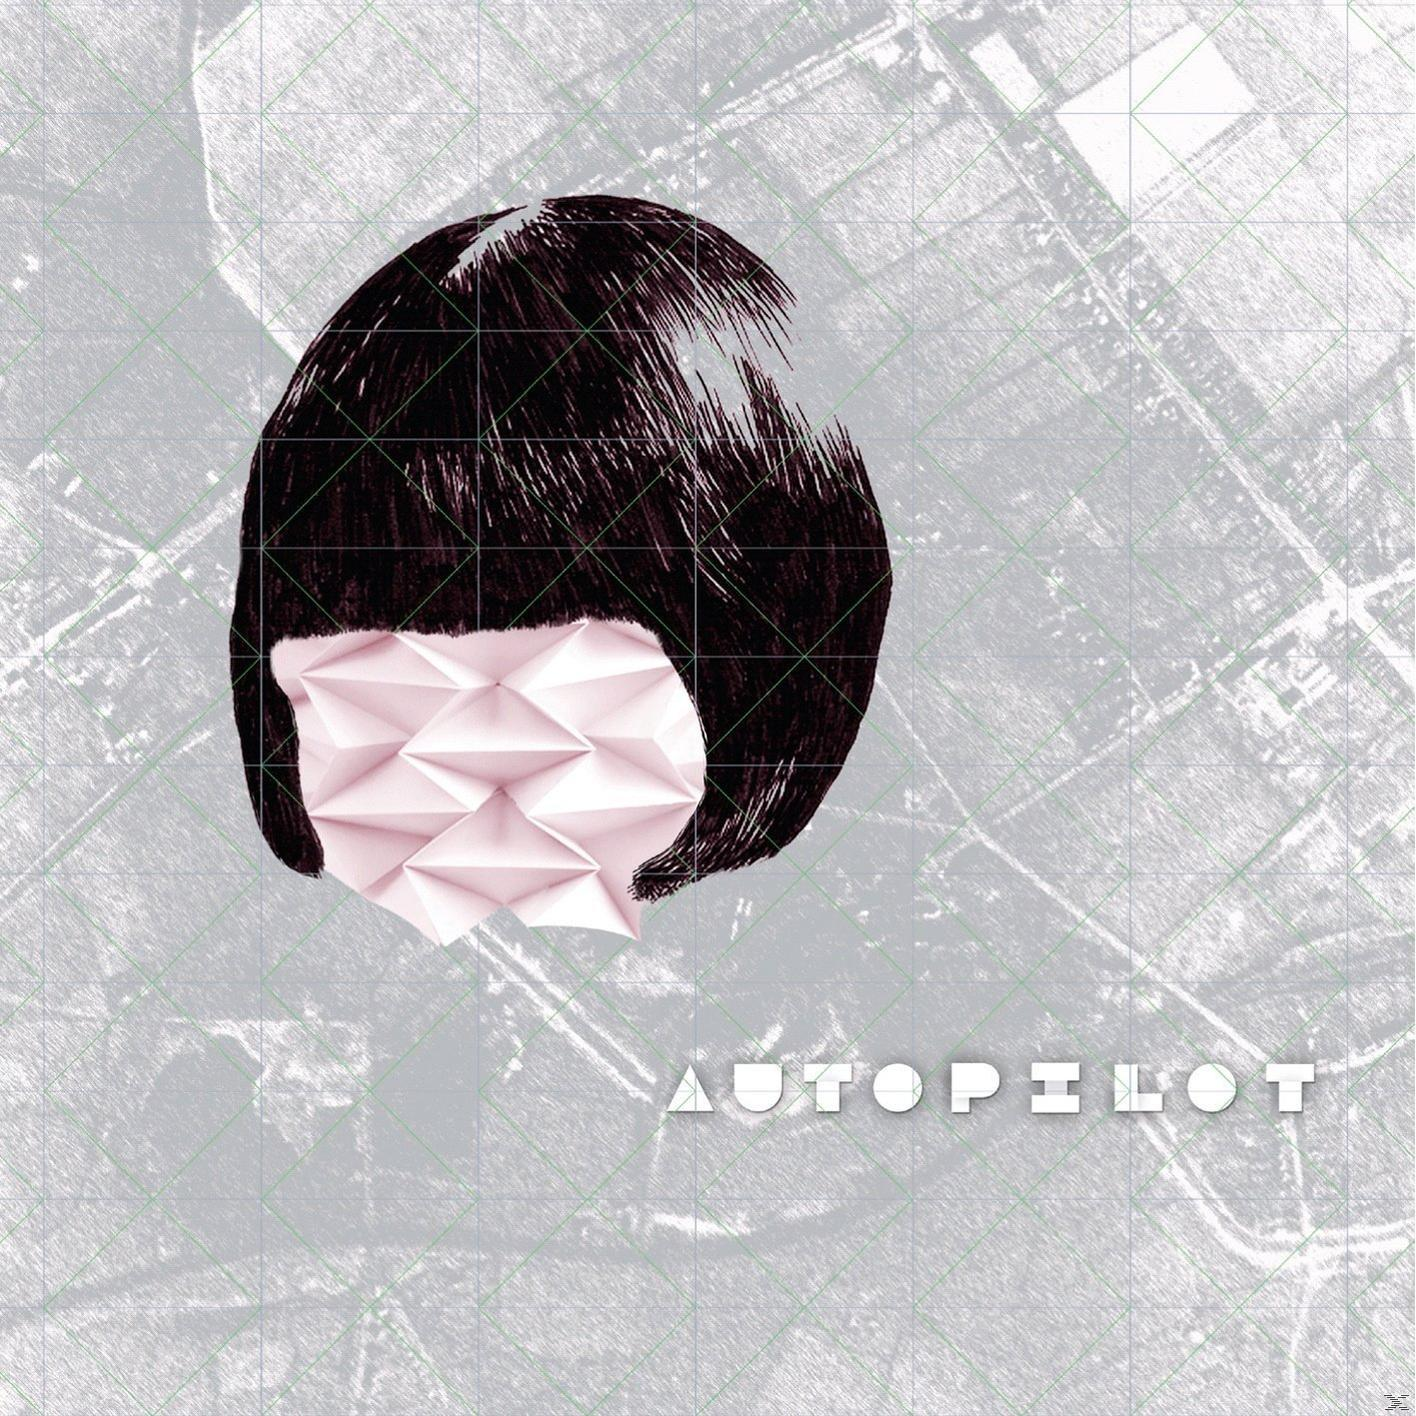 - - VARIOUS (CD) Autopilot